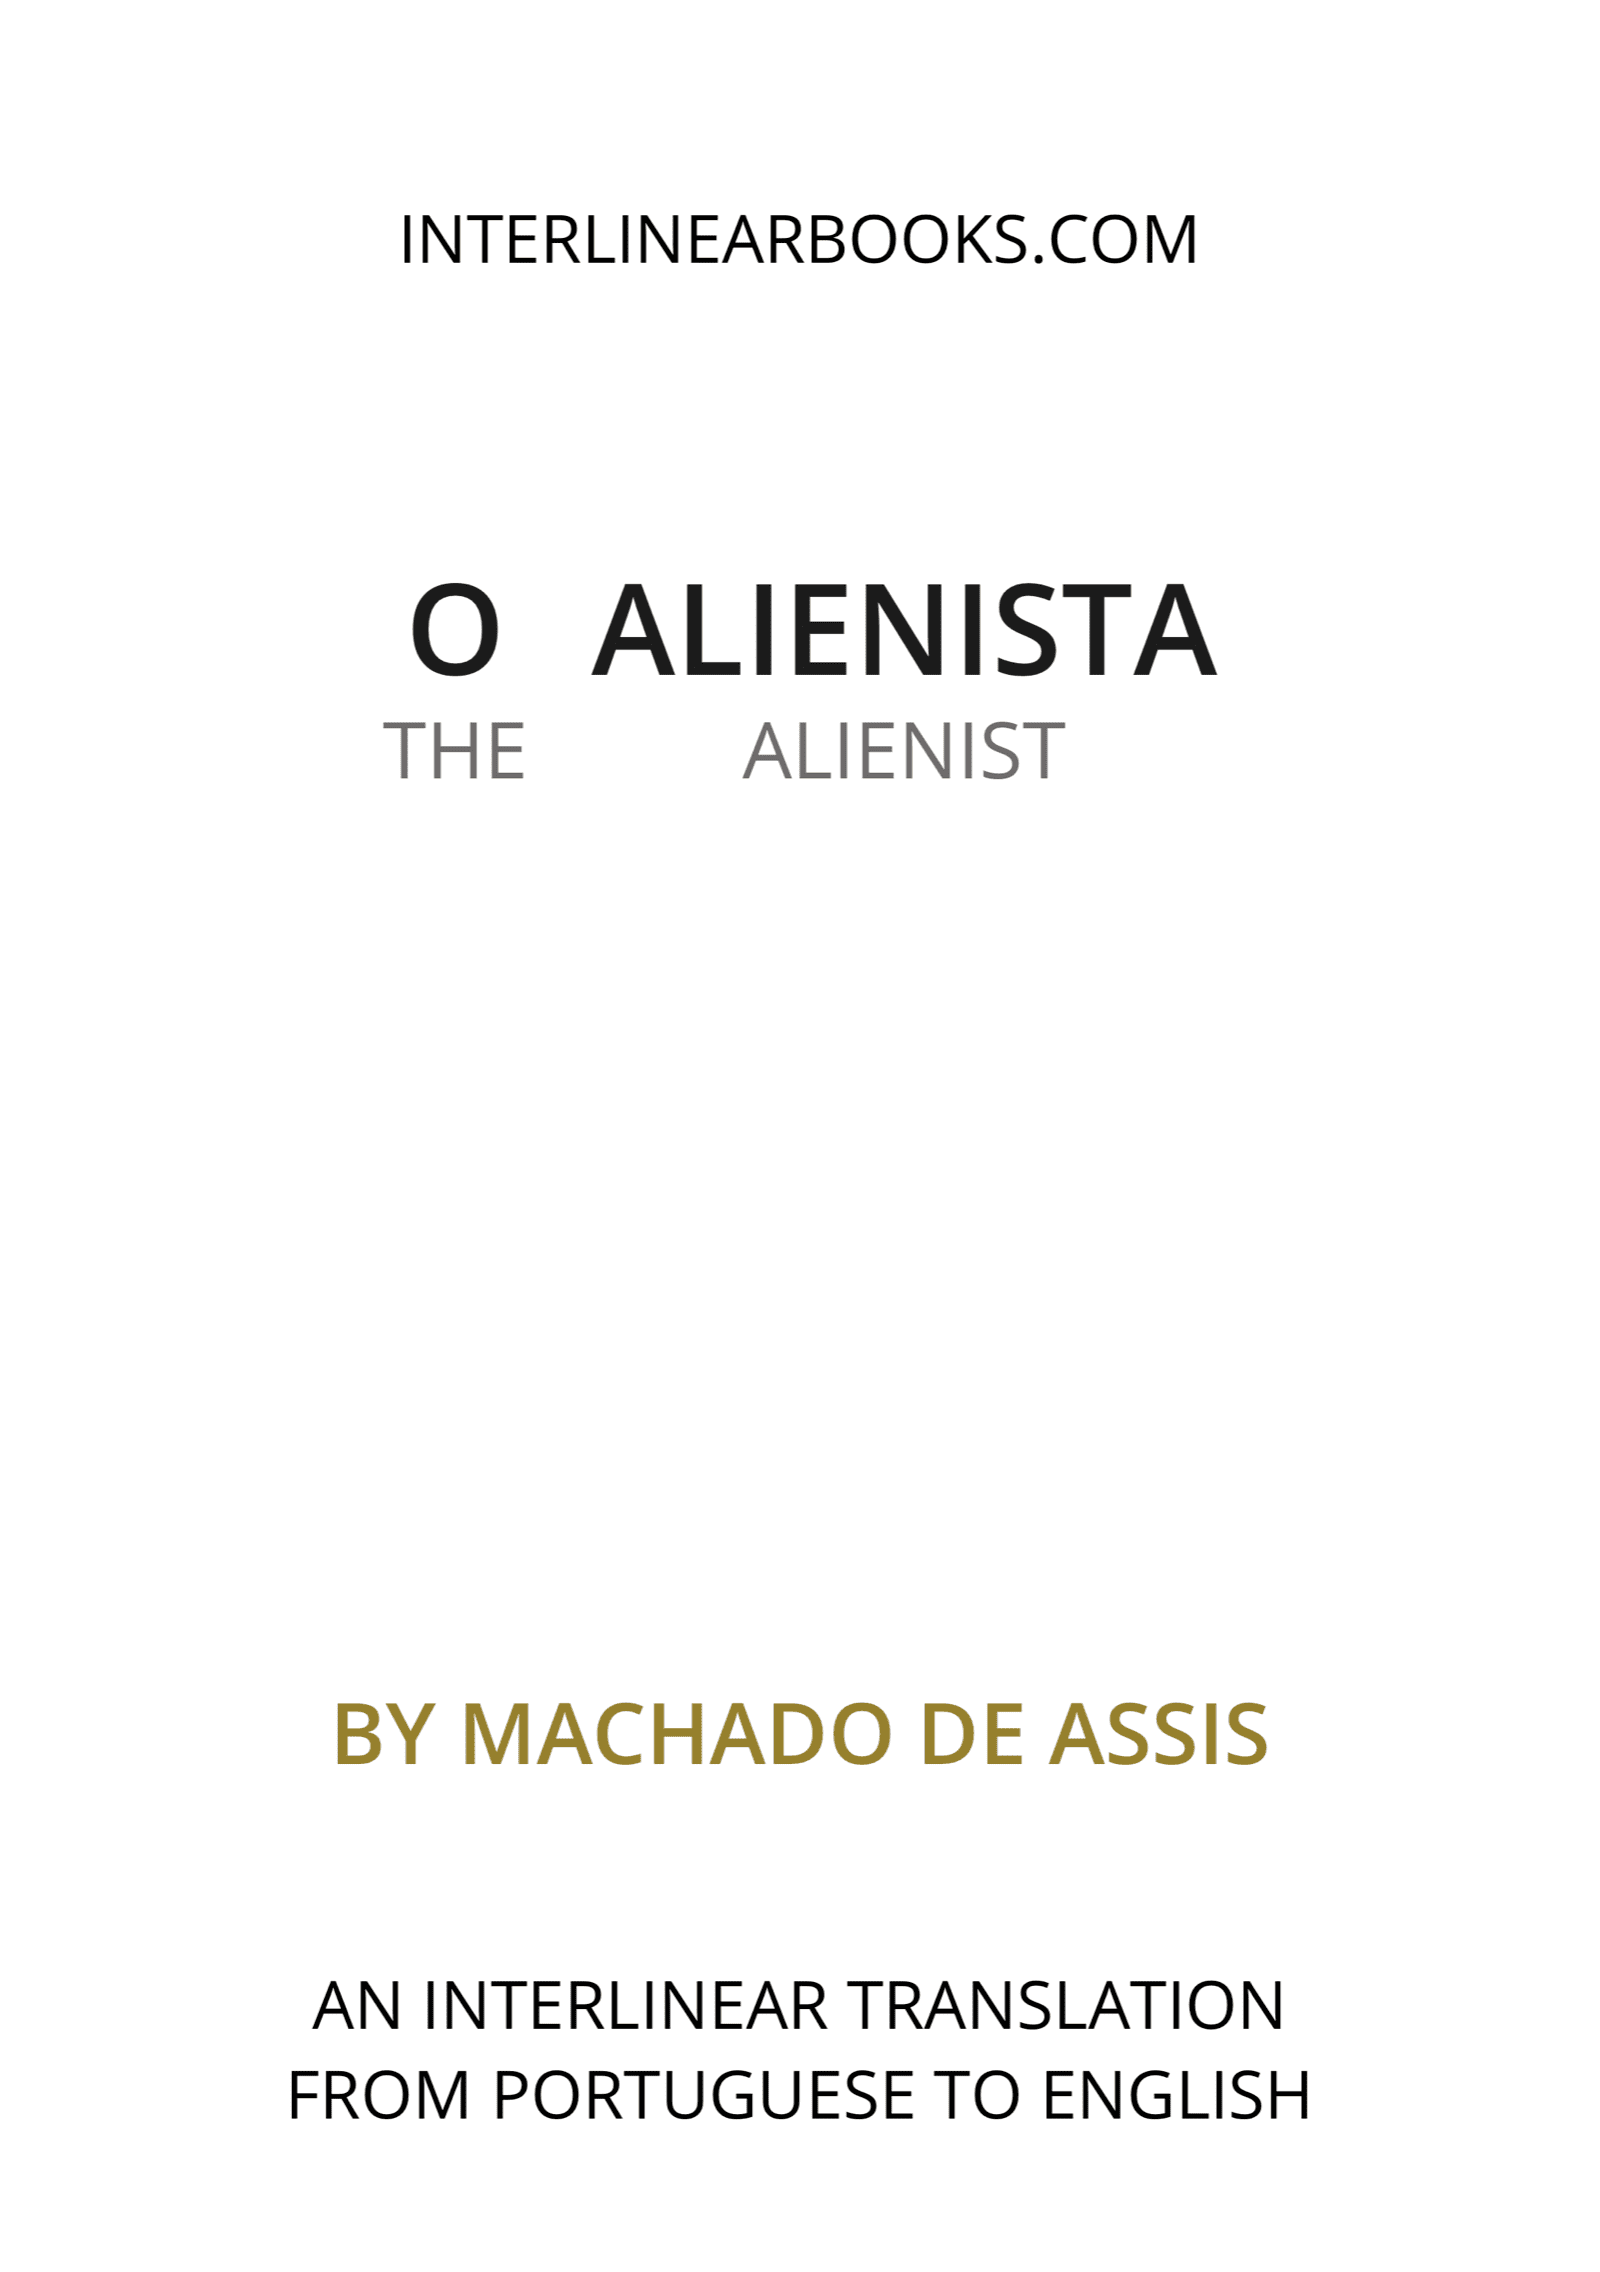 Portuguese book: O alienista / The Alienist